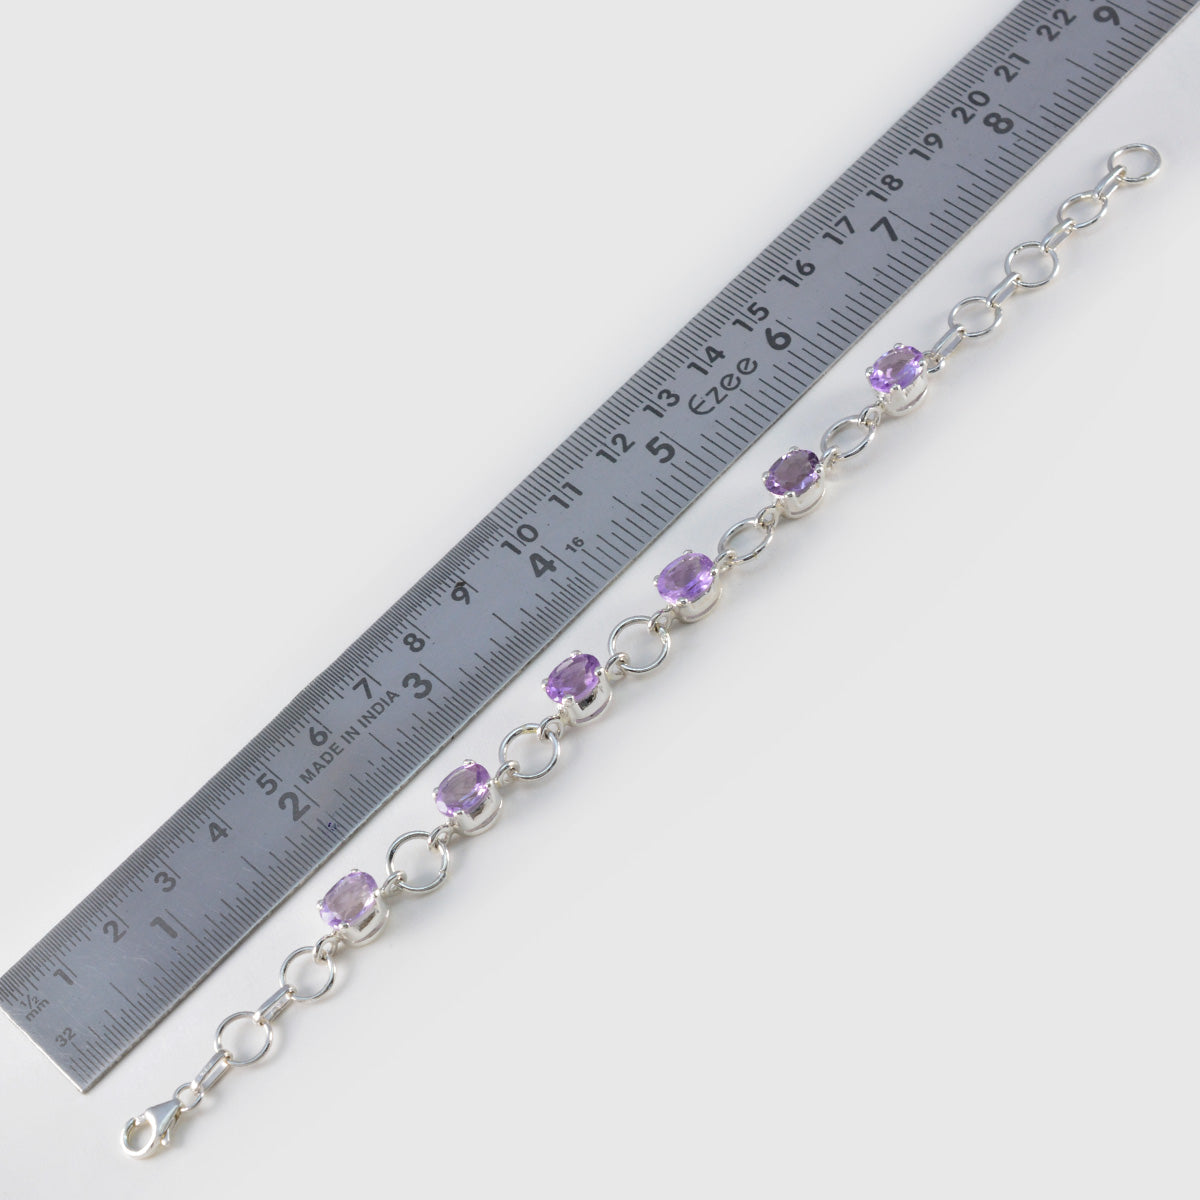 Riyo Bulk 925 Sterling Silber Armband für Mädchen Amethyst Armband Krappenfassung Armband mit Angelhaken Tennisarmband L Größe 6-8,5 Zoll.